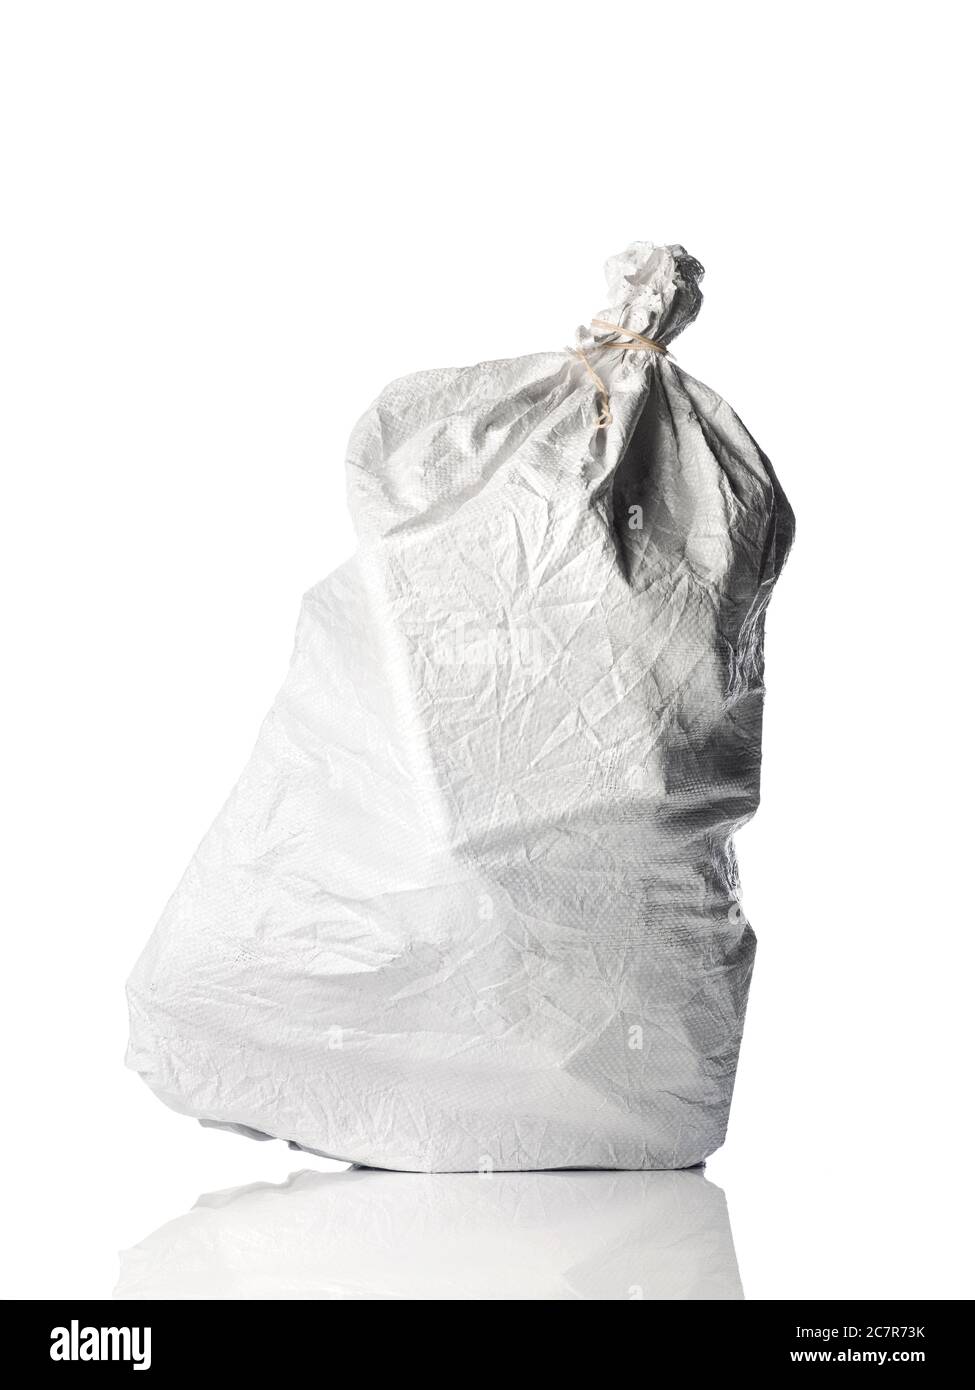 white woven sack bag Stock Photo